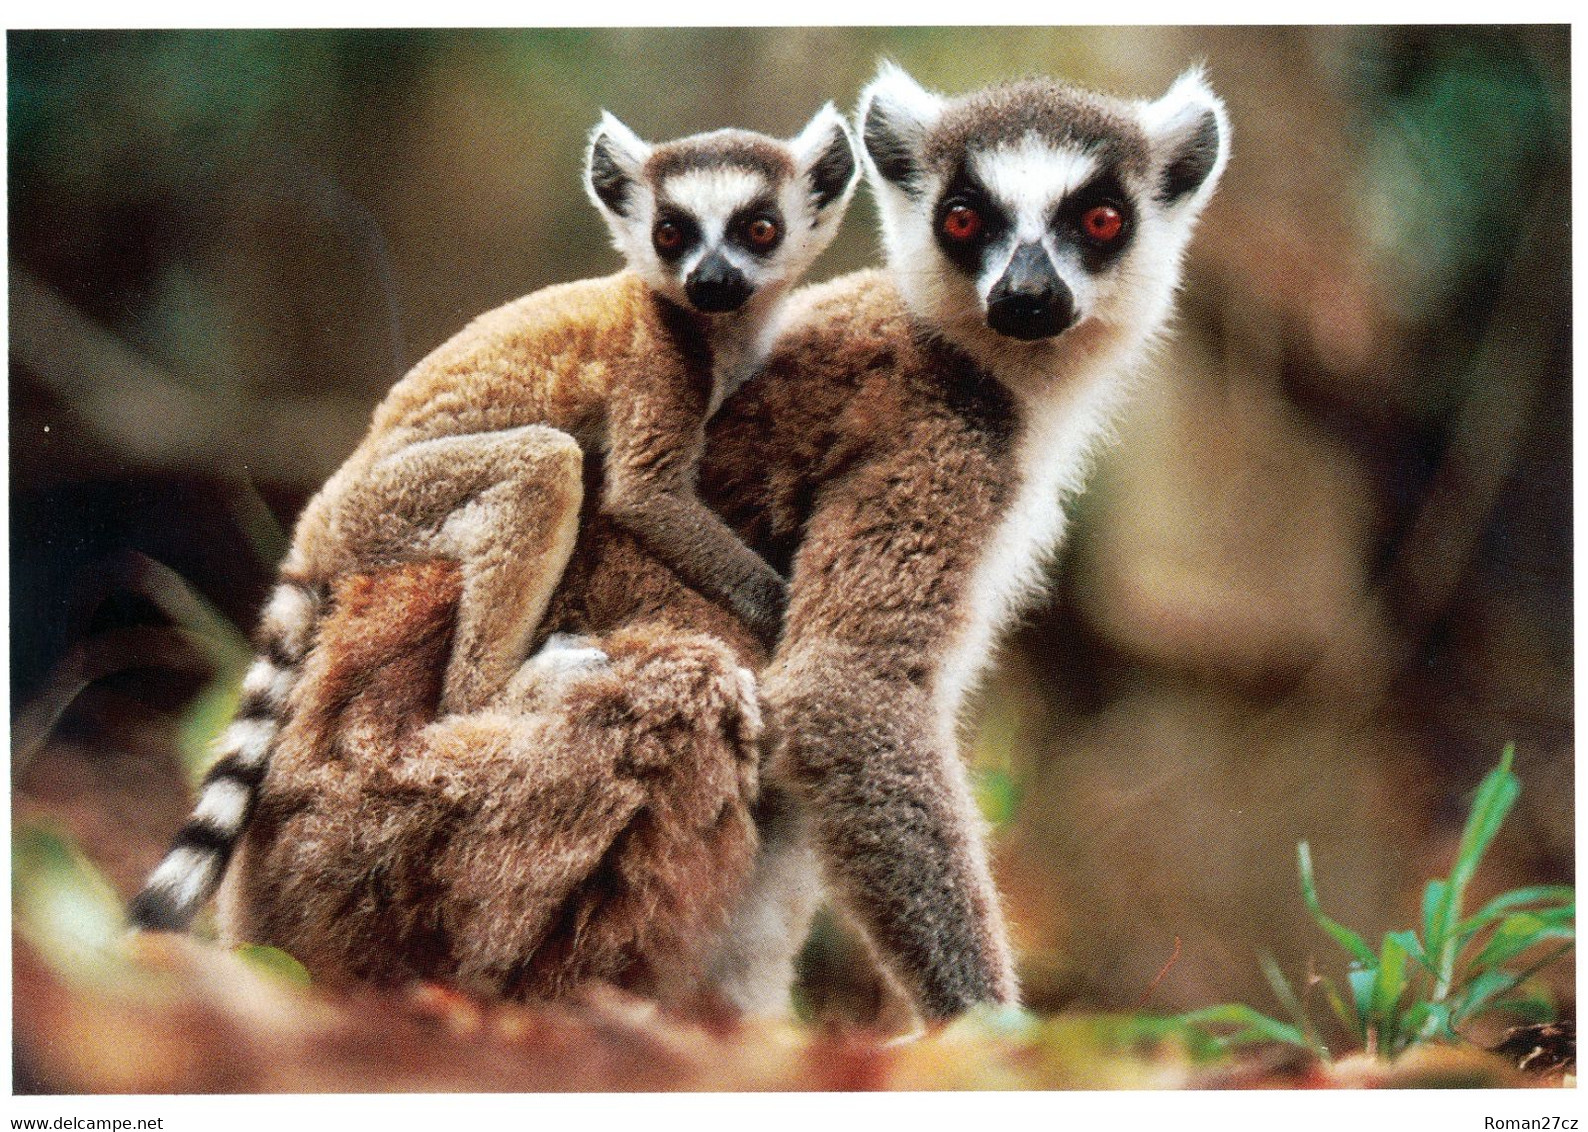 Noorder Dierenpark (ZOO Emmen), NL - Ring-tailed Lemur - Emmen